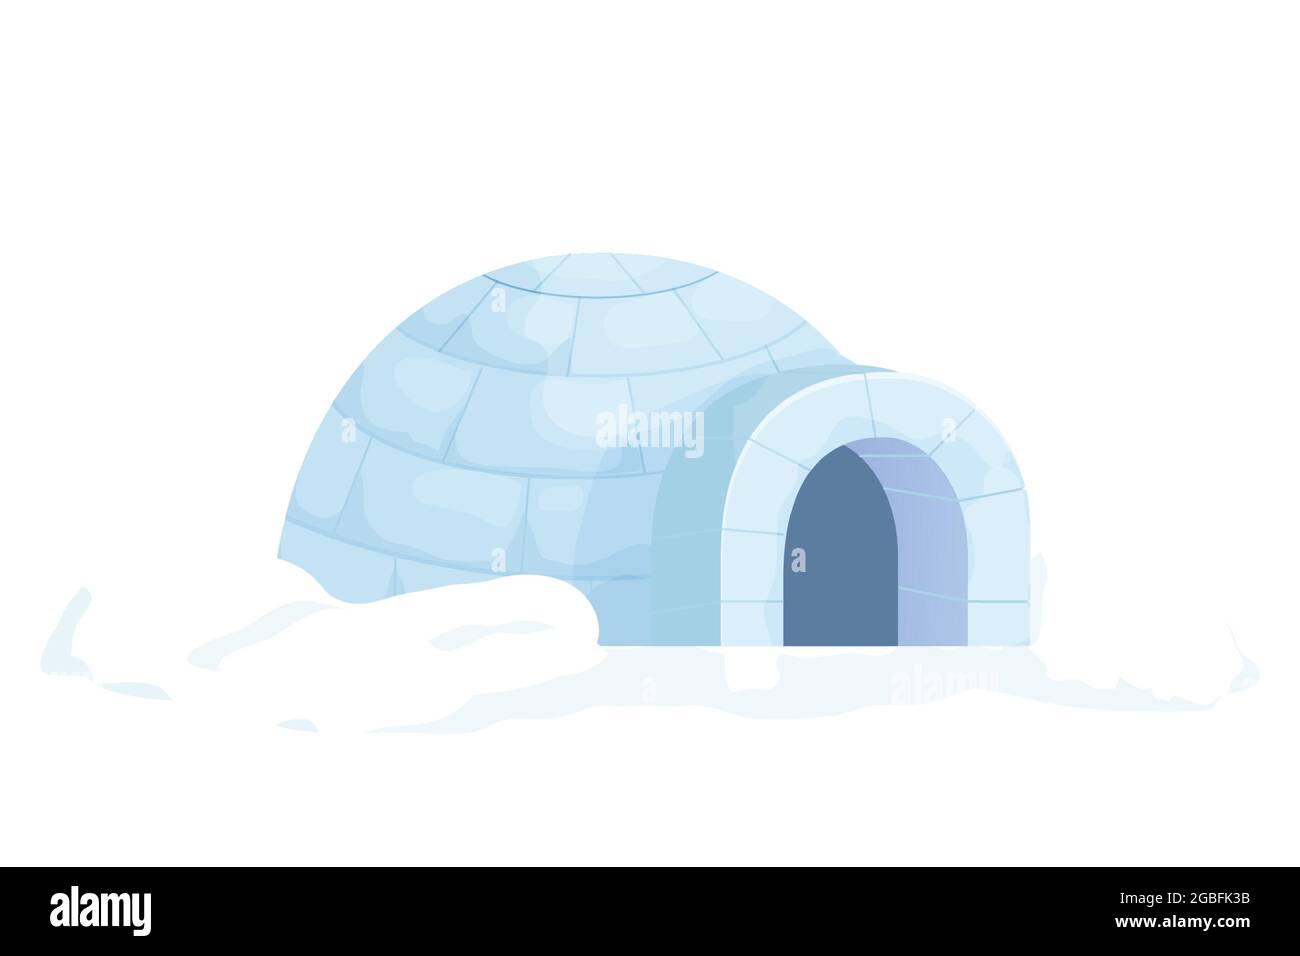 Igloo traditionnel de neige de style dessin animé isolé sur fond blanc. Icehouse Outdoor, culture esquimau, maison anarctique. Illustration vectorielle Illustration de Vecteur